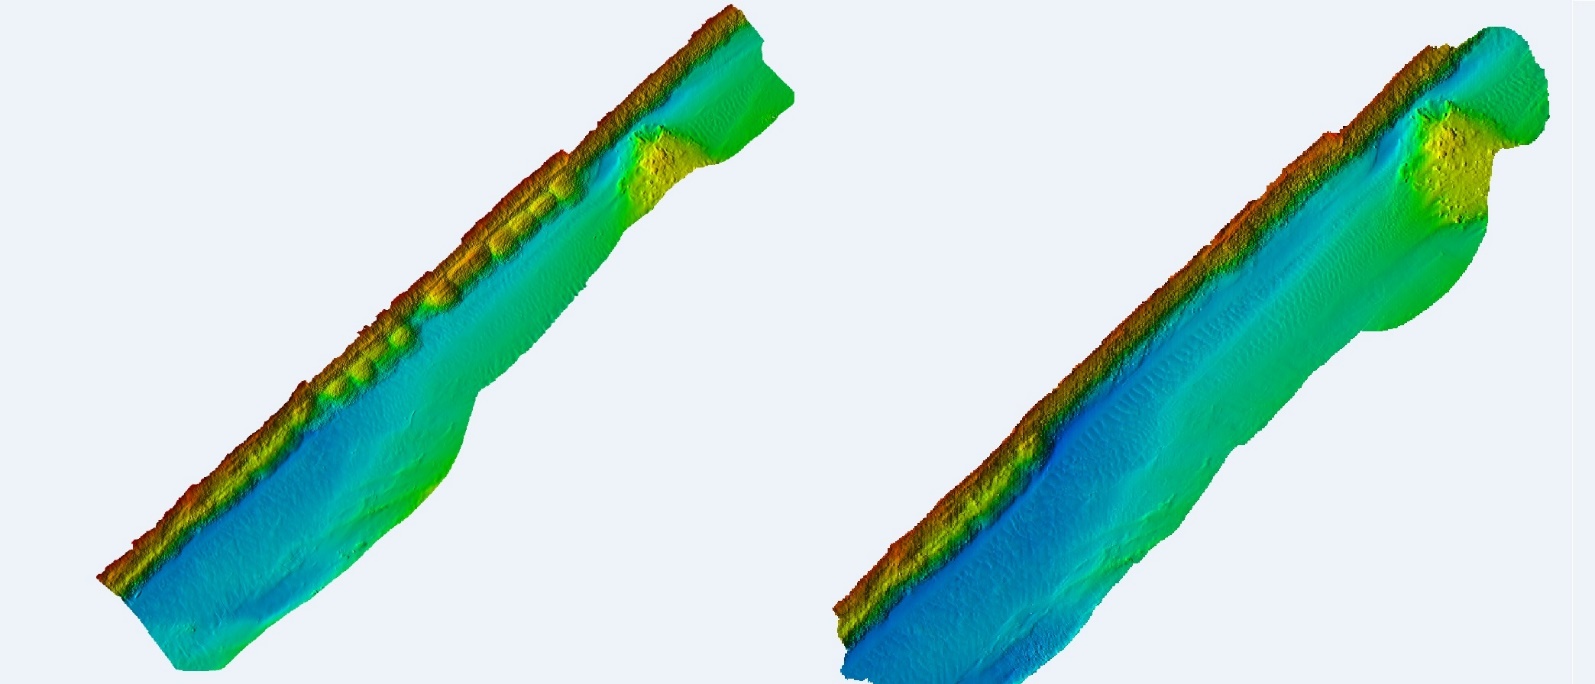 3D model korita (desna obala) rijeke Neretve nakon i prije radova nasipanja